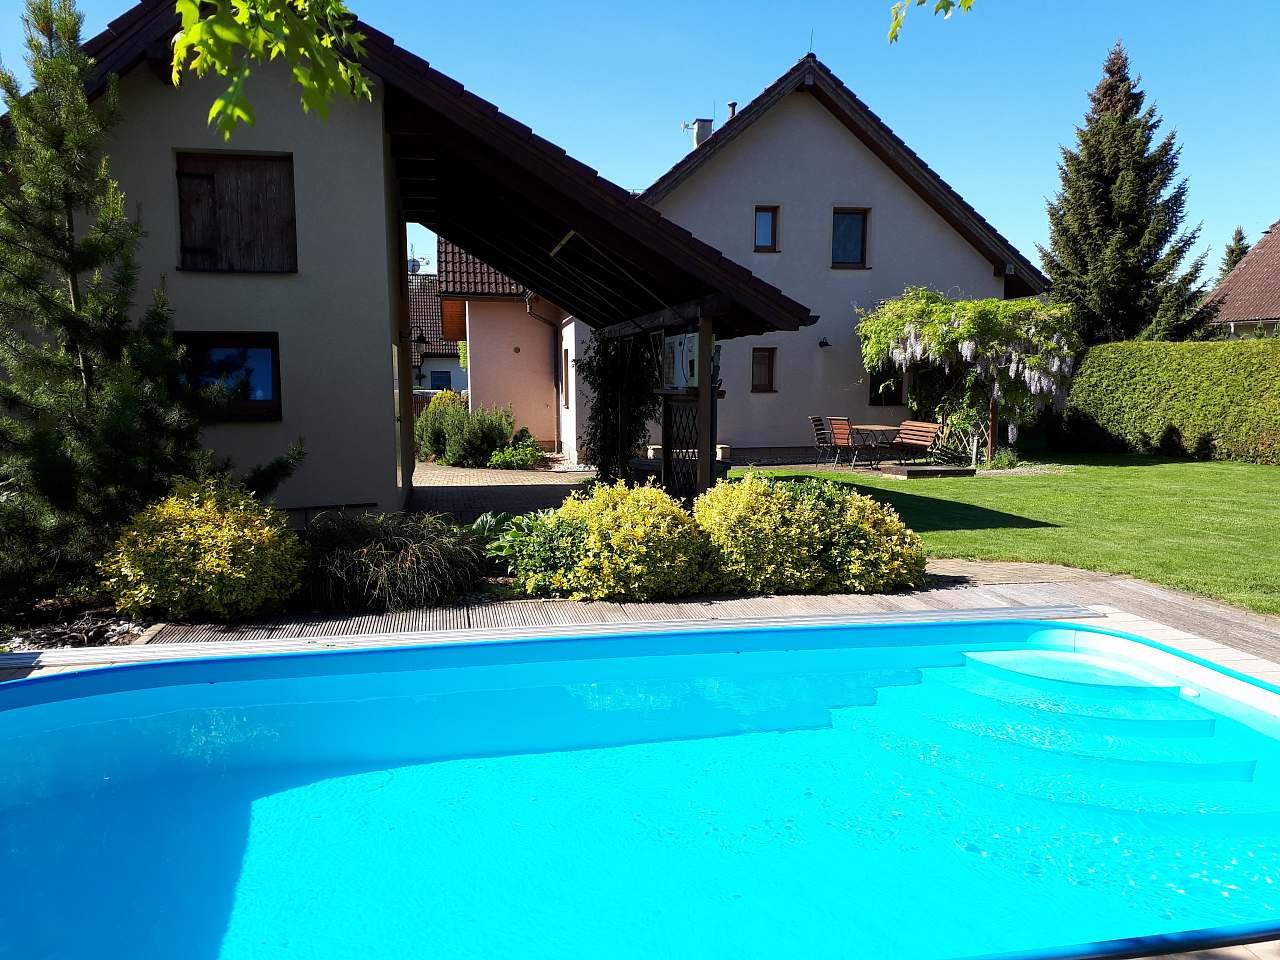 Maison avec jardin et piscine